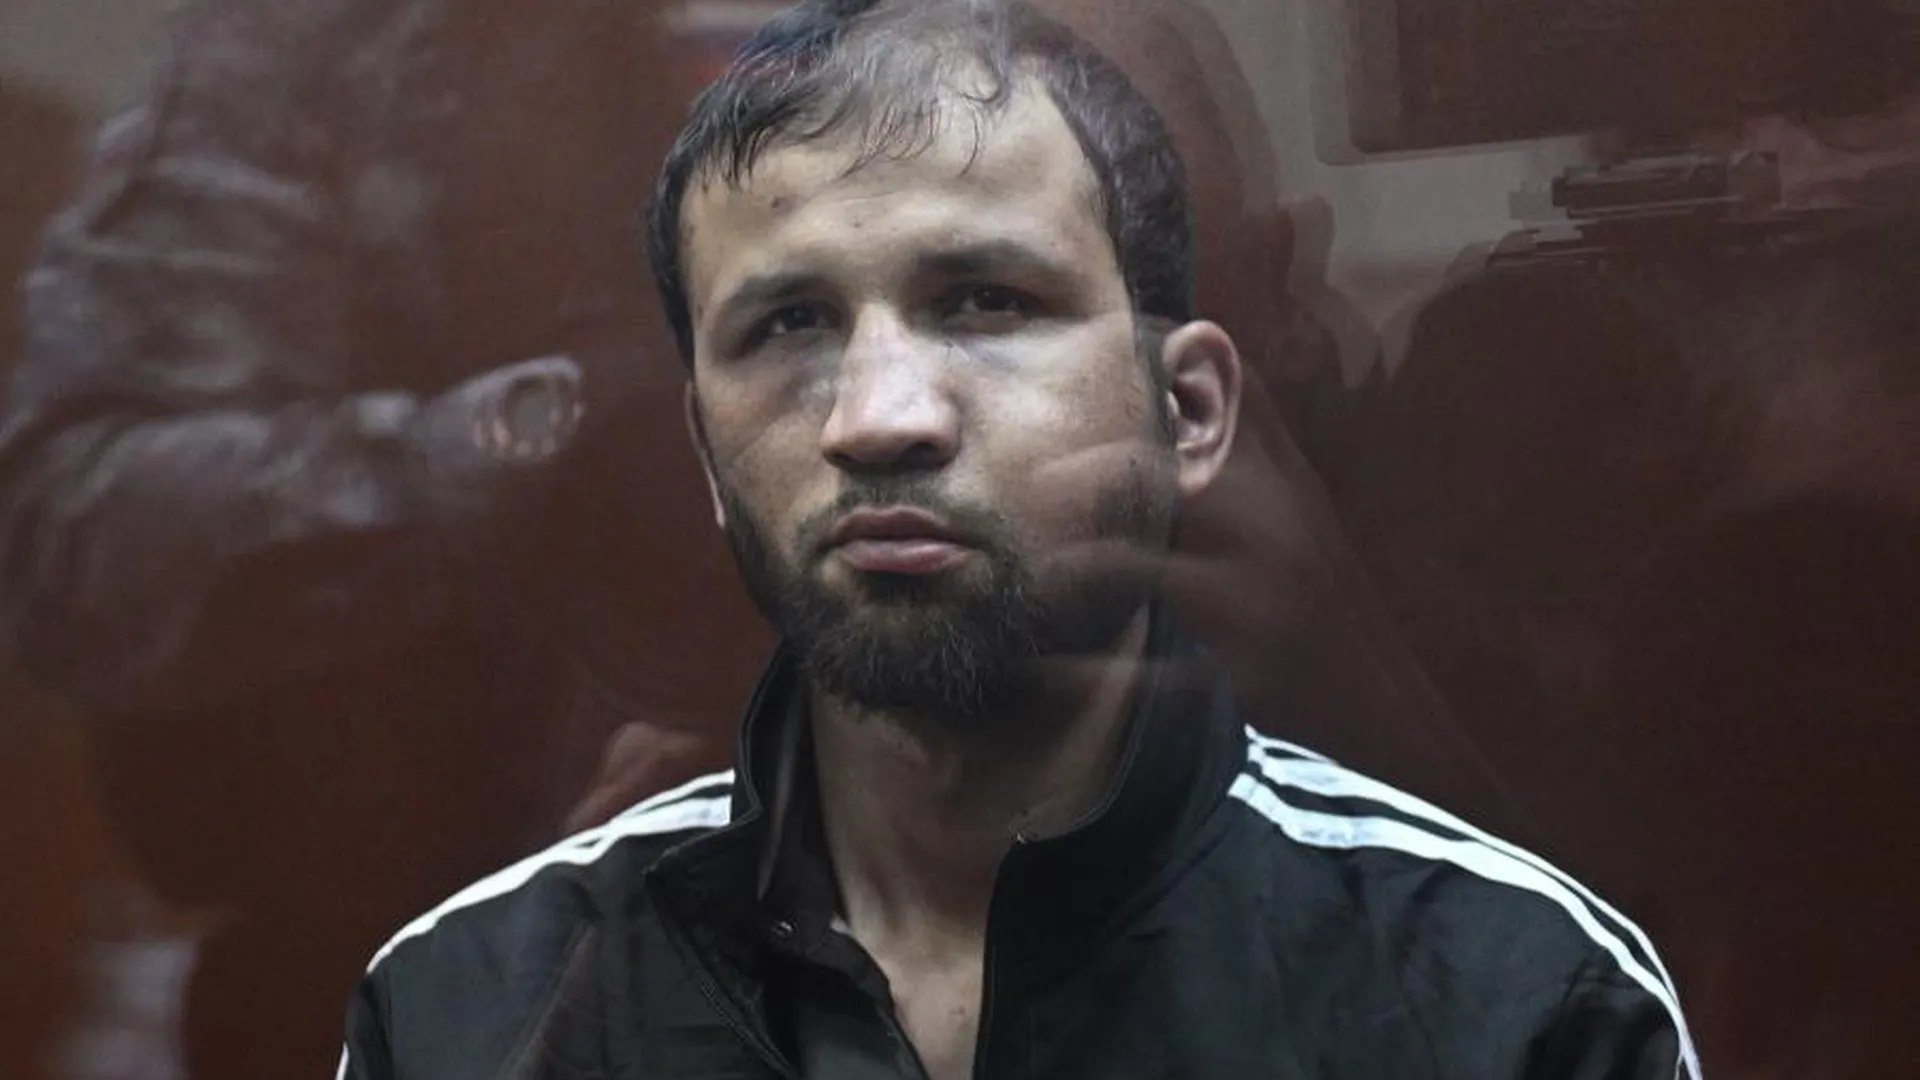 SHOT: главарем у обвиняемых в теракте в «Крокусе» оказался Шамсидин Фаридуни